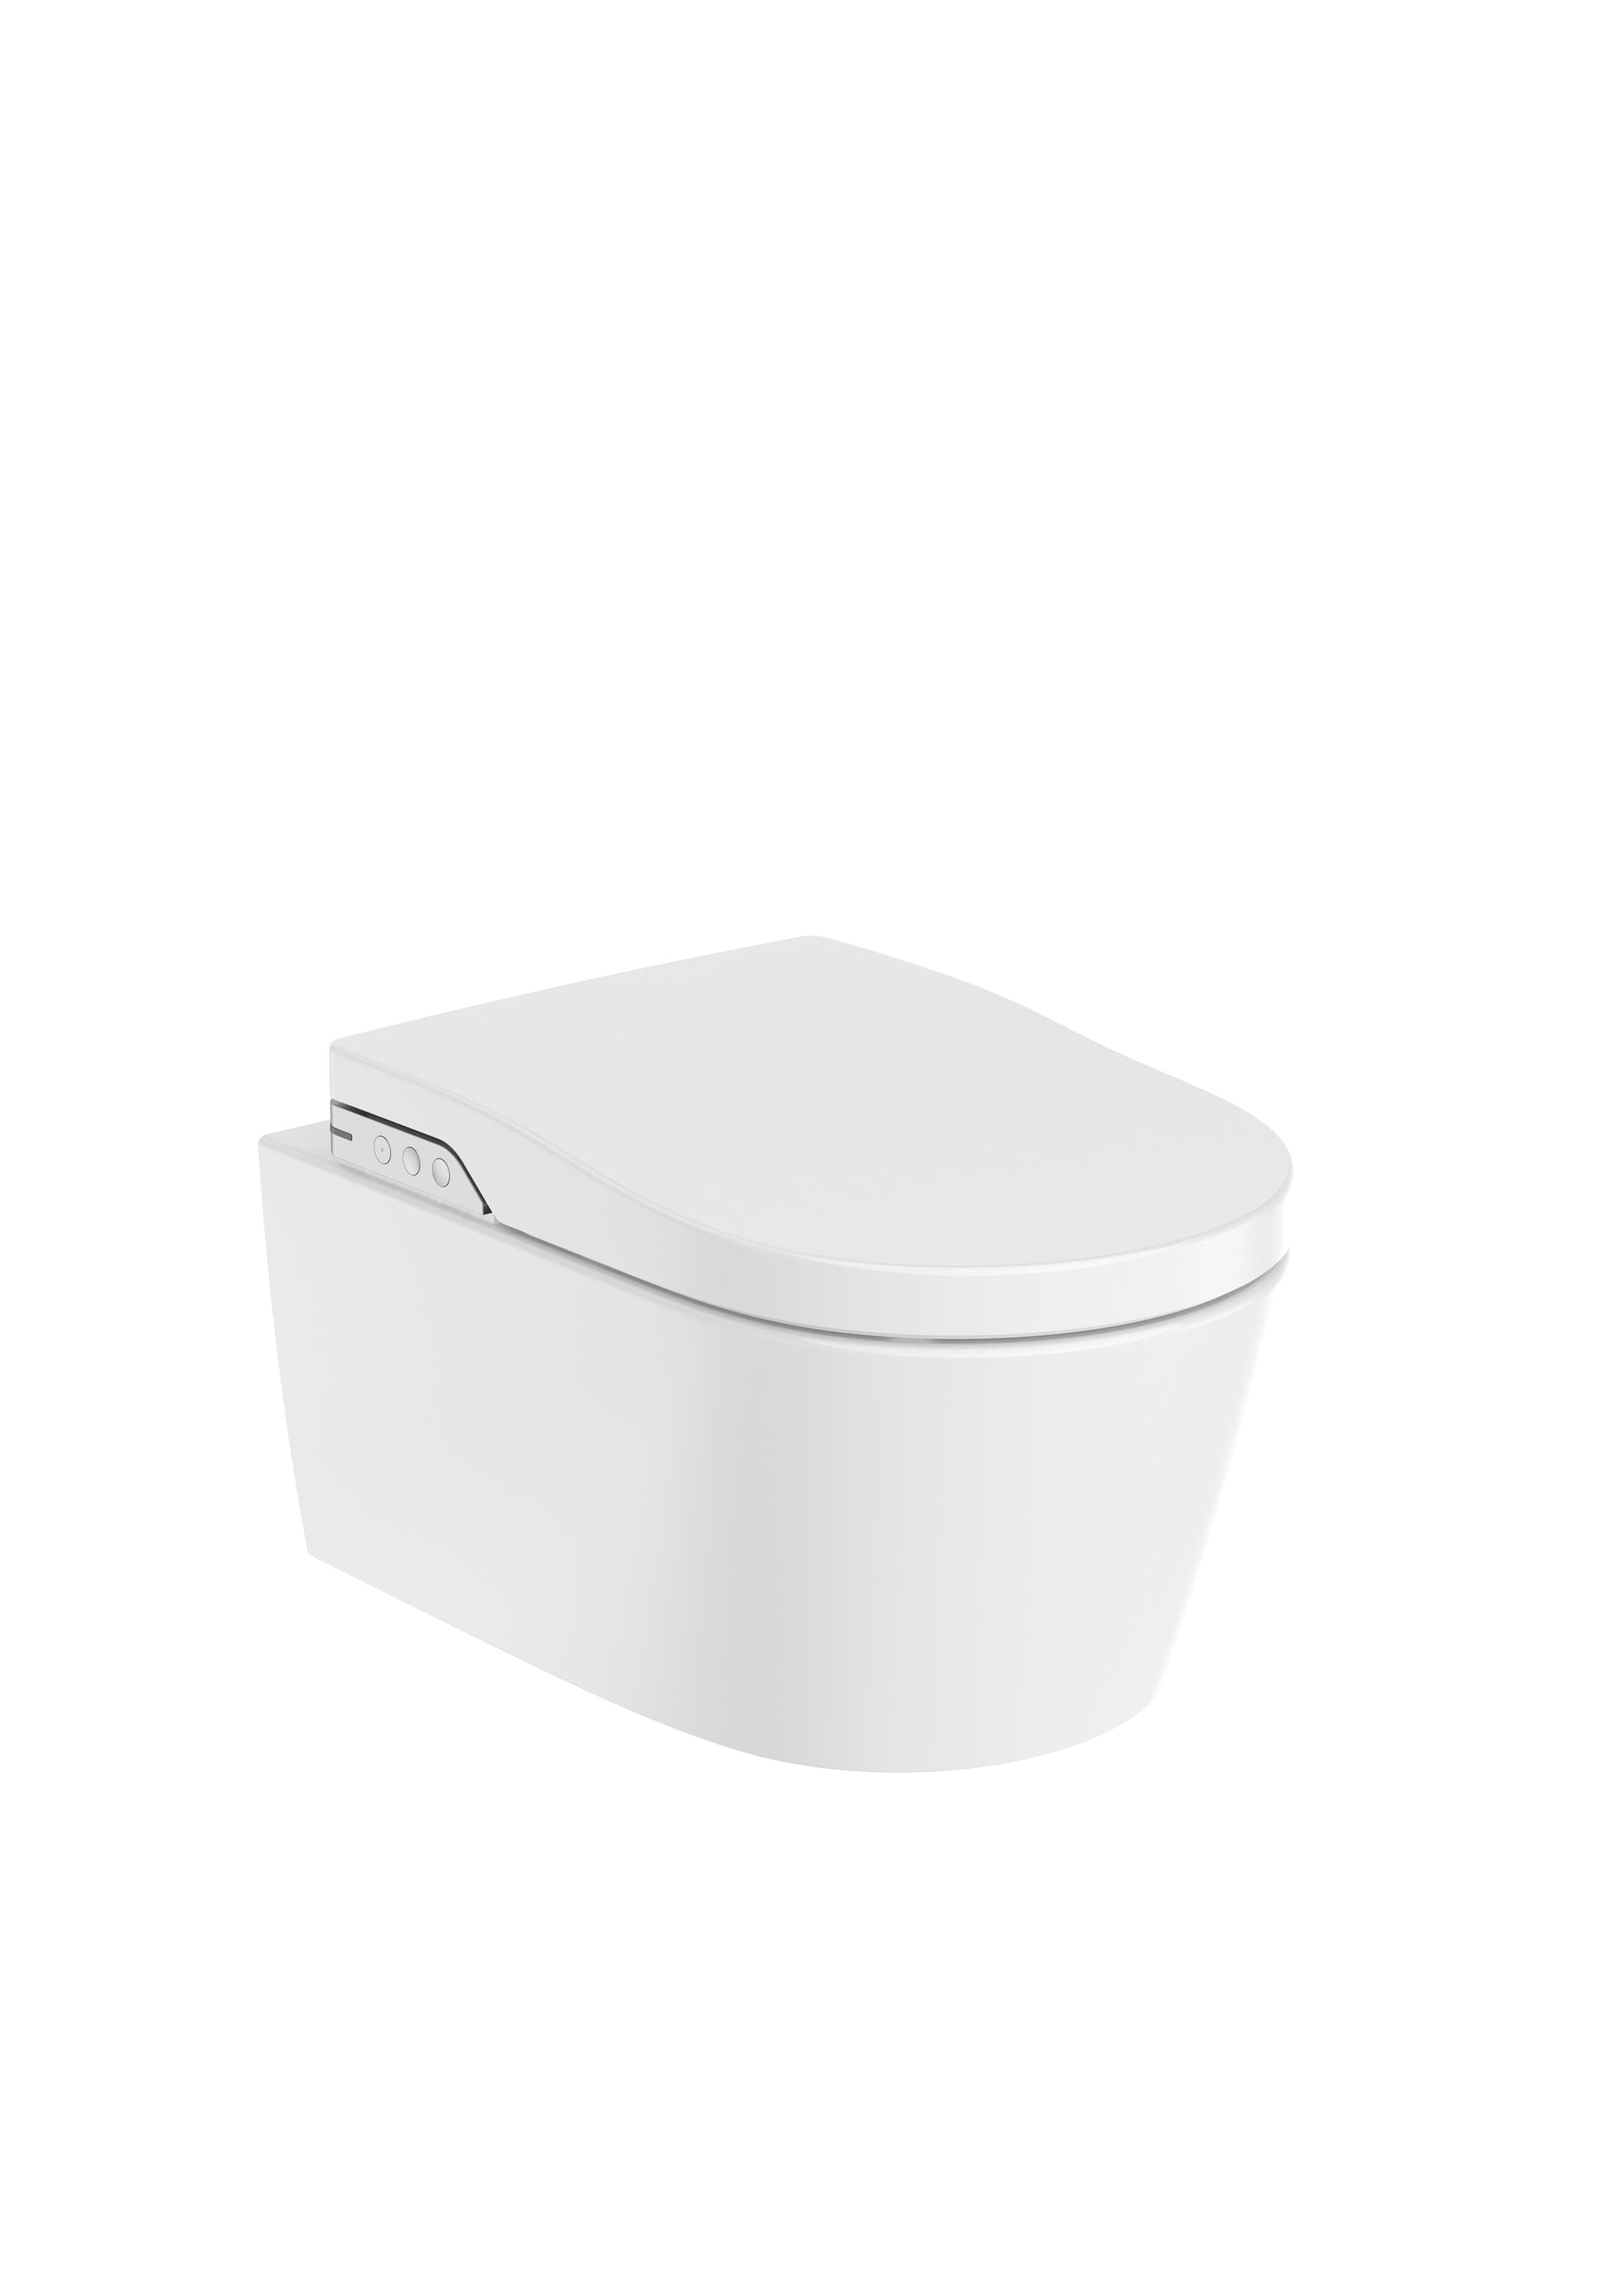 Sanitaire WC INSPIRA A803060001 In-Wash® - Cuvette de WC lavant suspendue en porcelaine vitrifiée sans bride Rimless. Avec sortie horizontale. Besoin d'une alimentation électrique. Roca 1 - Mirage ceramica